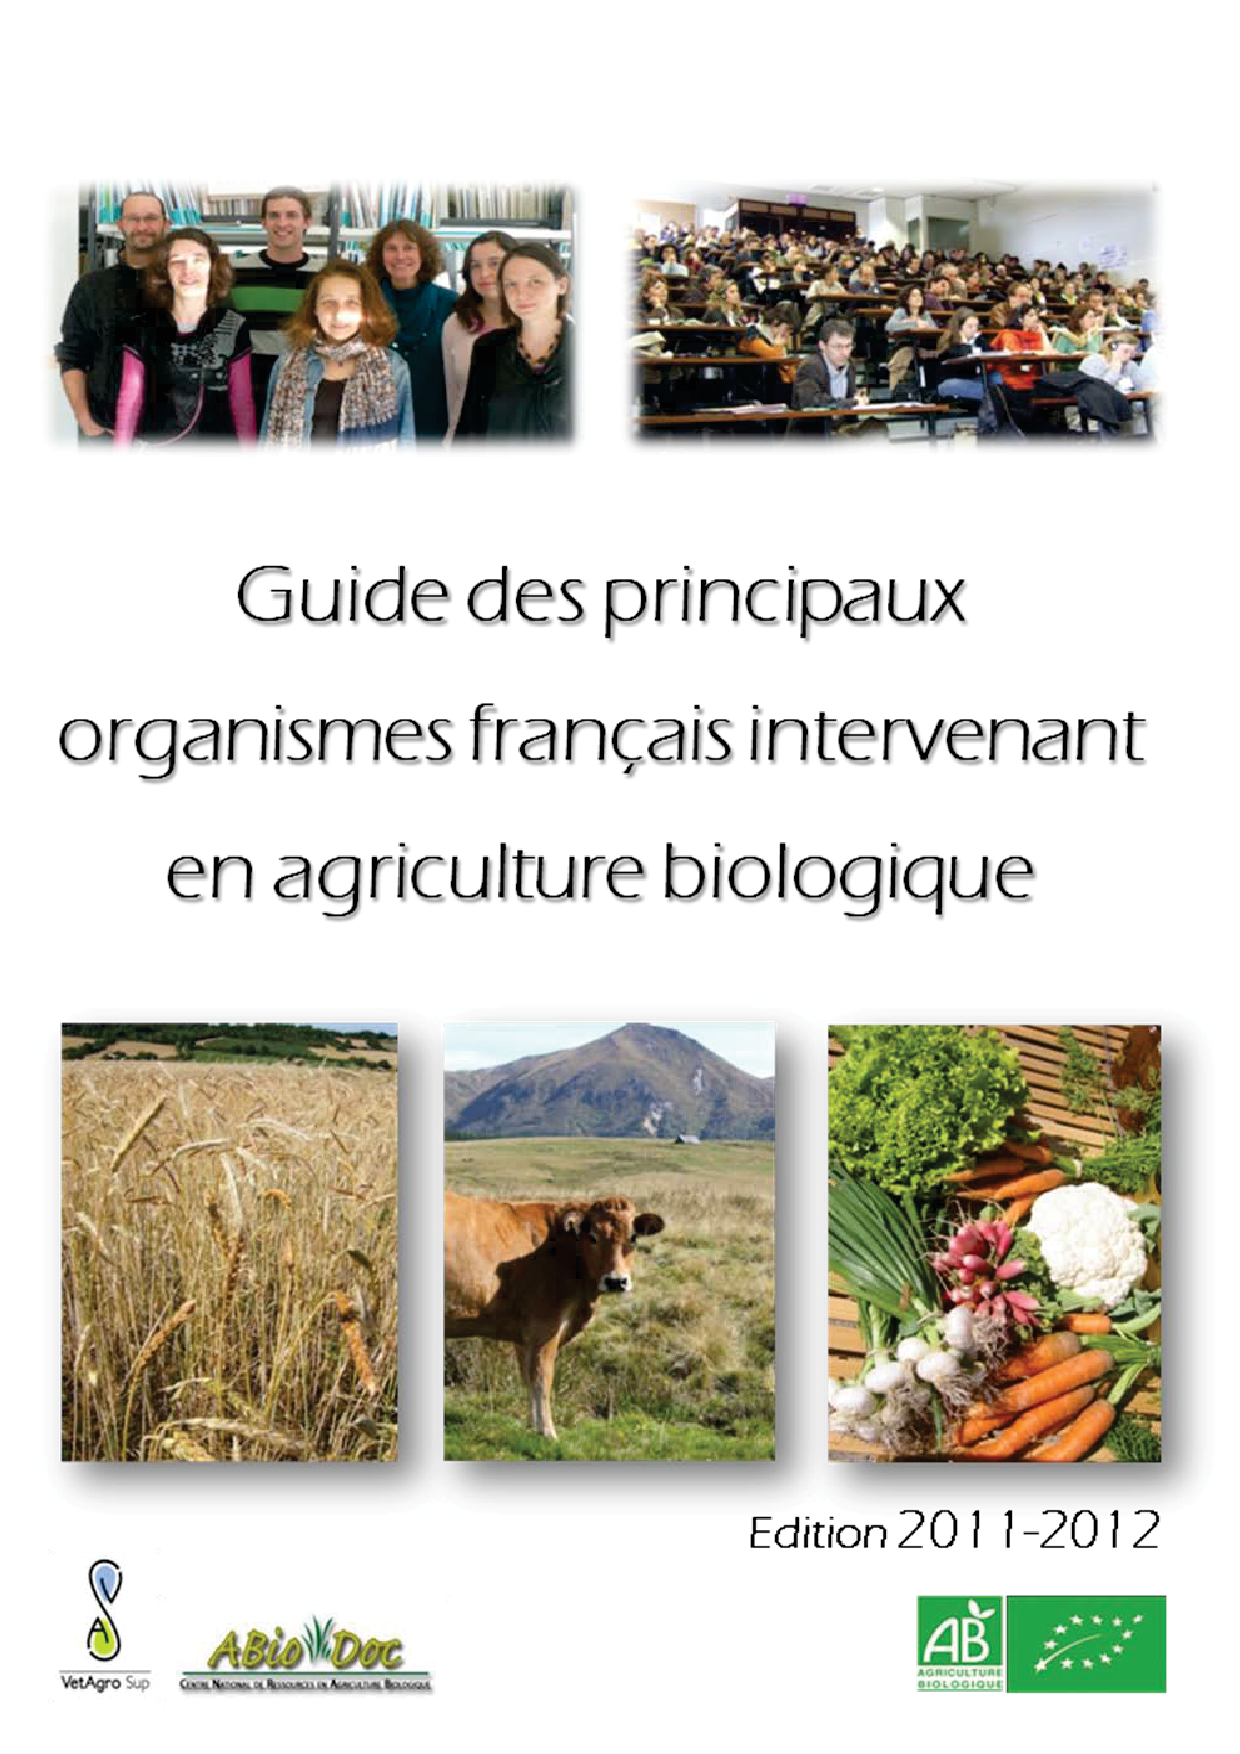 2012_guide_des_principaux_organismes_francais_en_ab.png